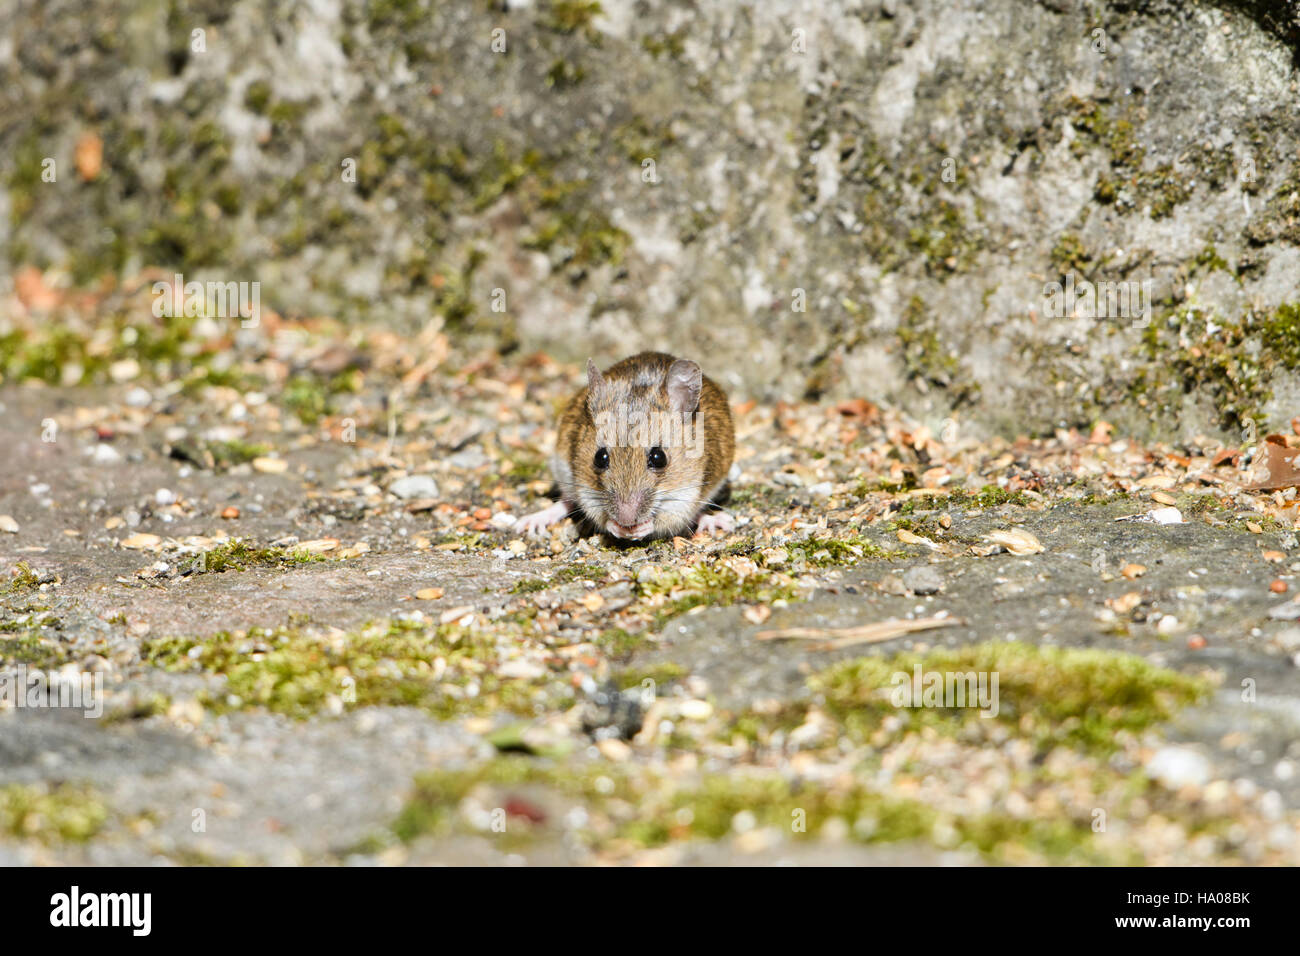 Une souris en bois se nourrissant de graines sous une mangeoire, Ardnamurchan, Ecosse, Royaume-Uni Banque D'Images